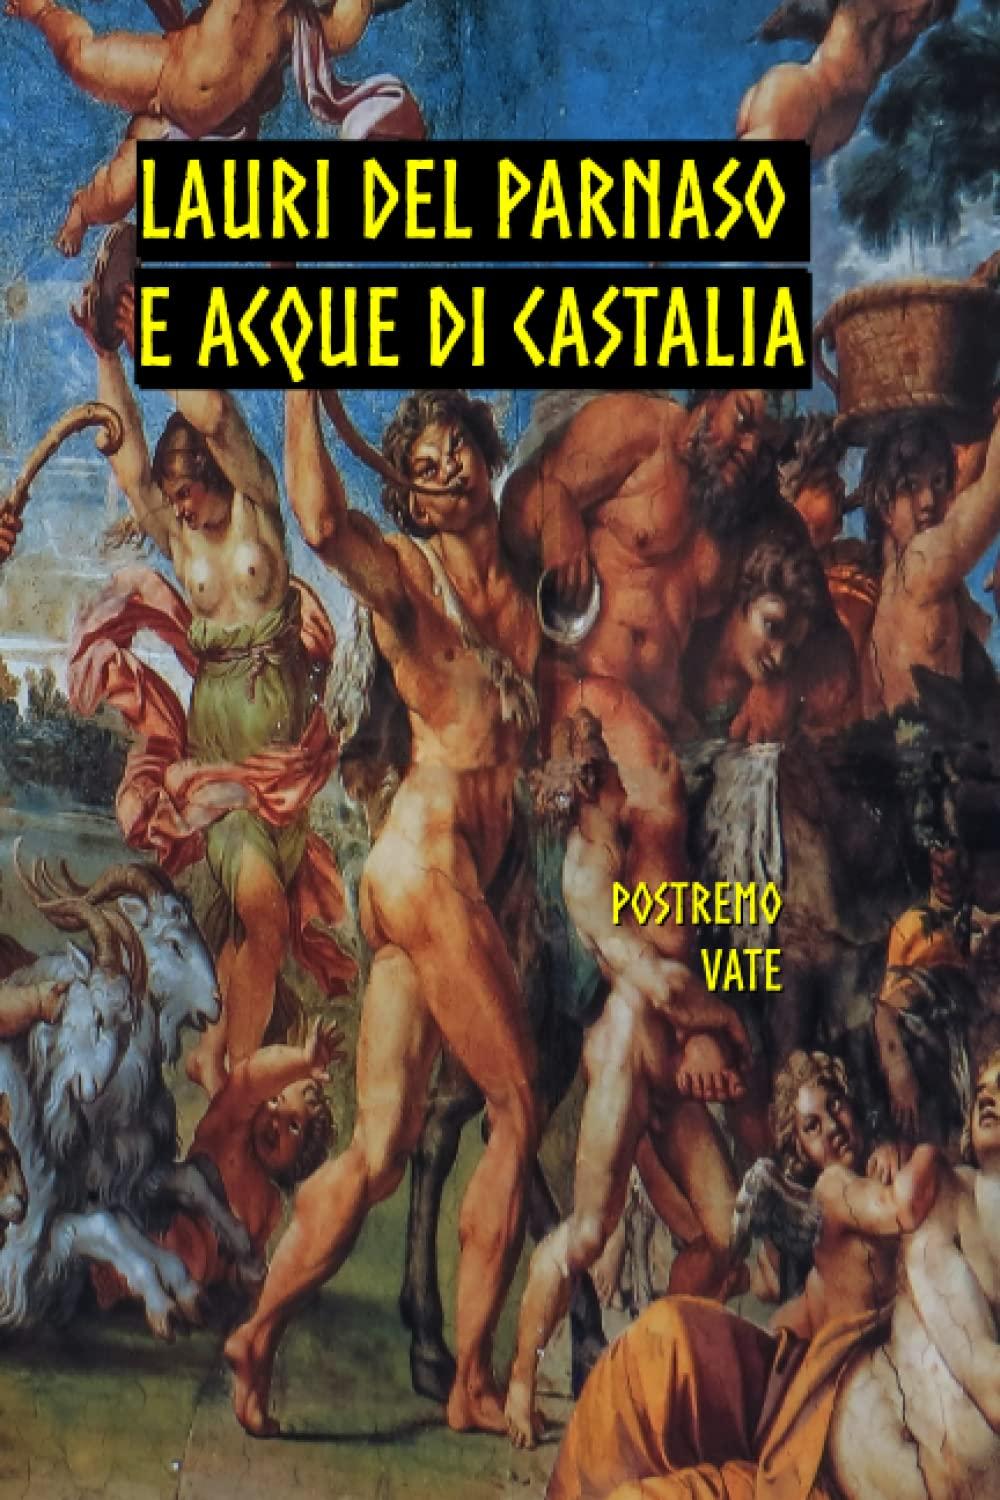 Libro "Lauri del Parnaso e acque di Castalia" di Postremo Vate